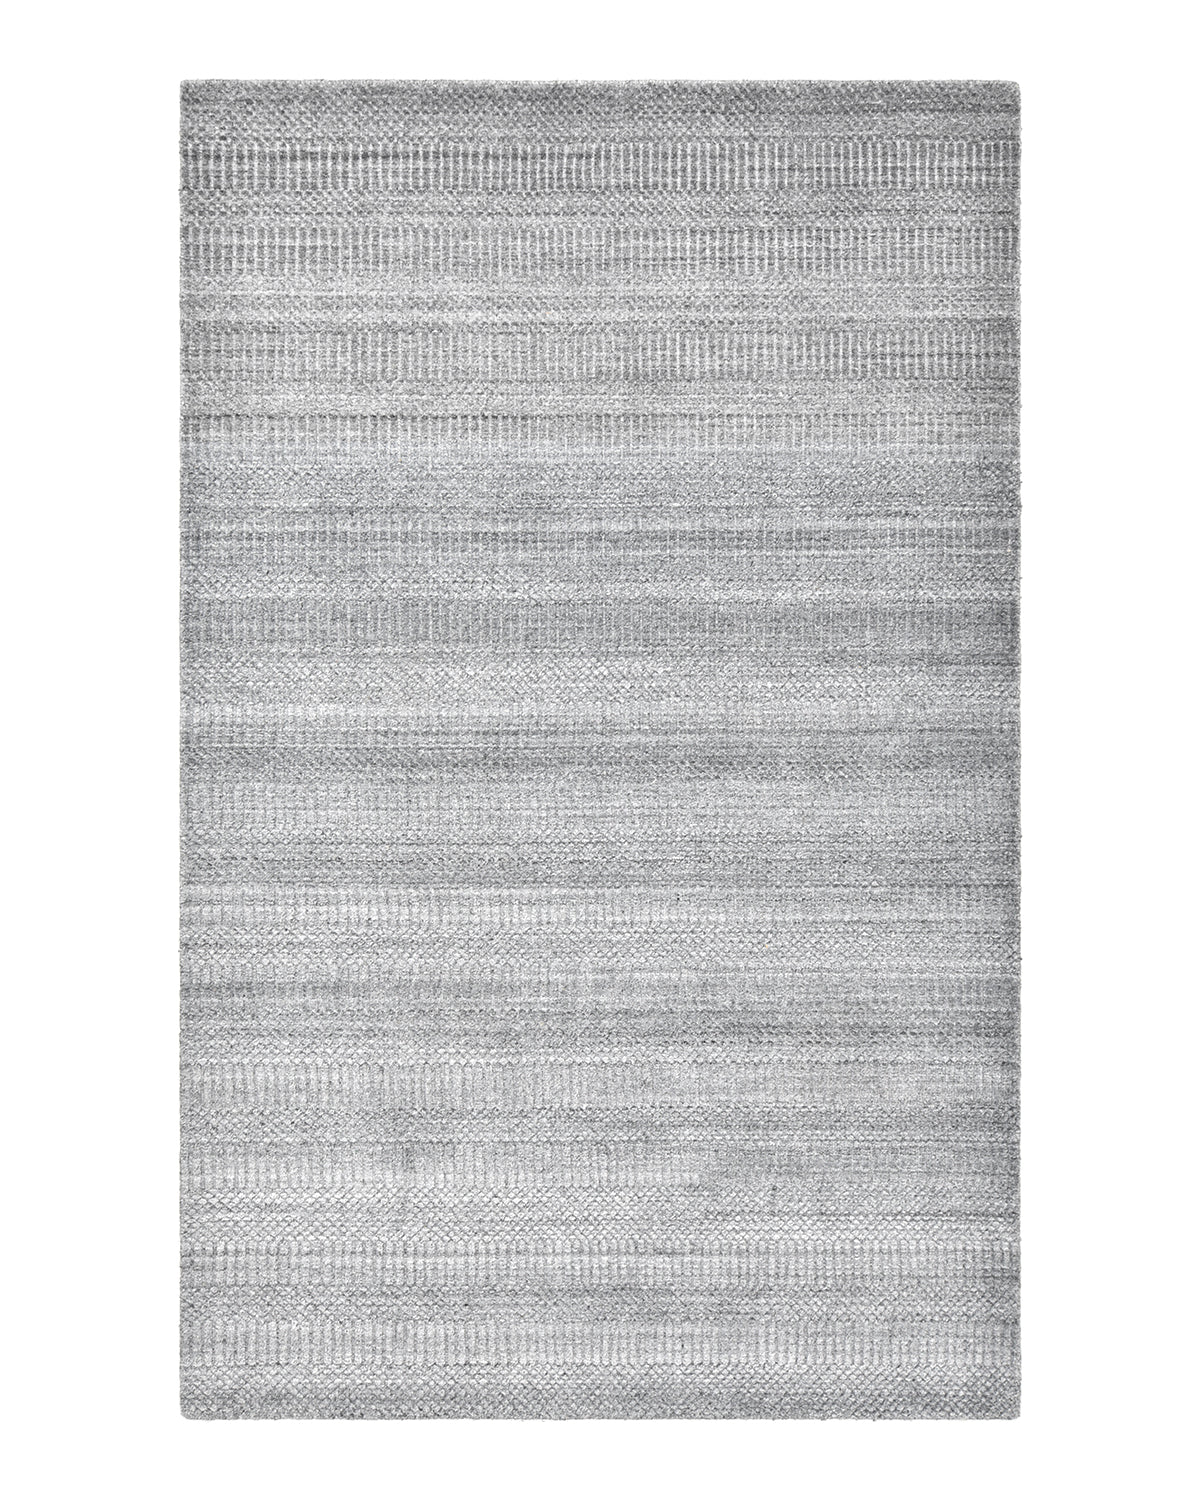 Sanam Handmade Contemporary Striped Gray Area Rug